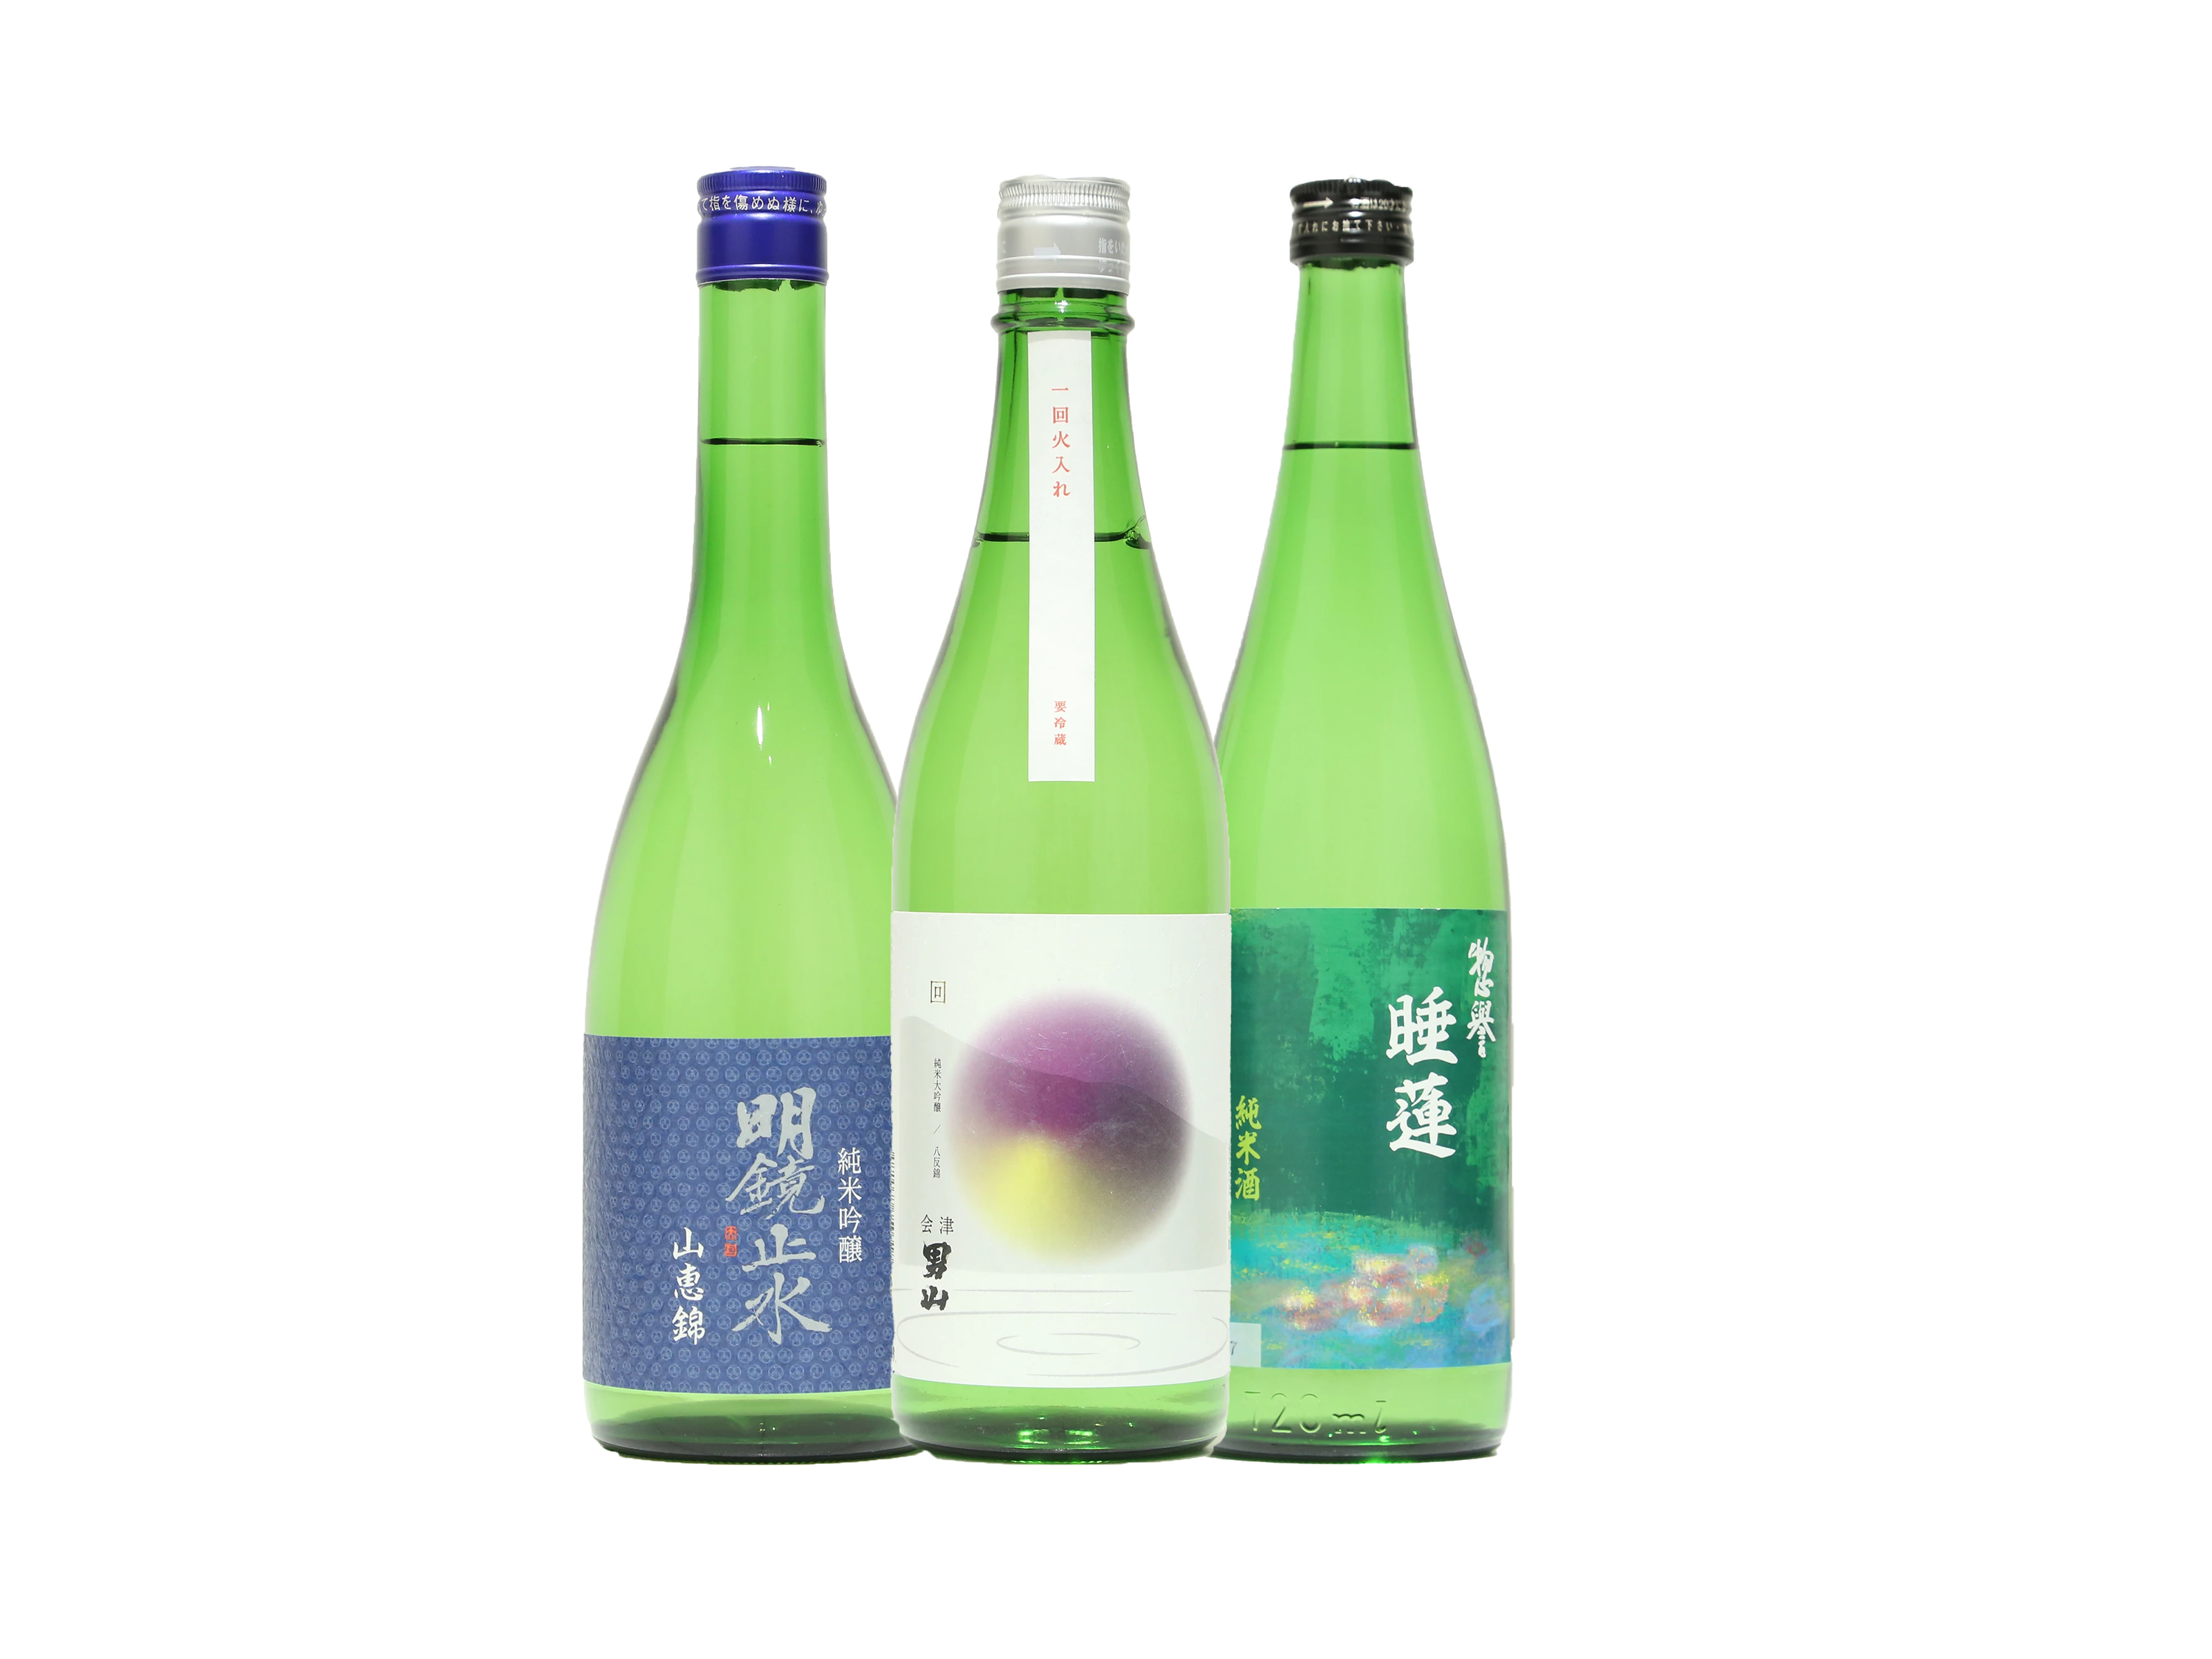 一部予約販売】 (4)呑みくらべ六銘柄揃えました 日本酒 - mathlabs 